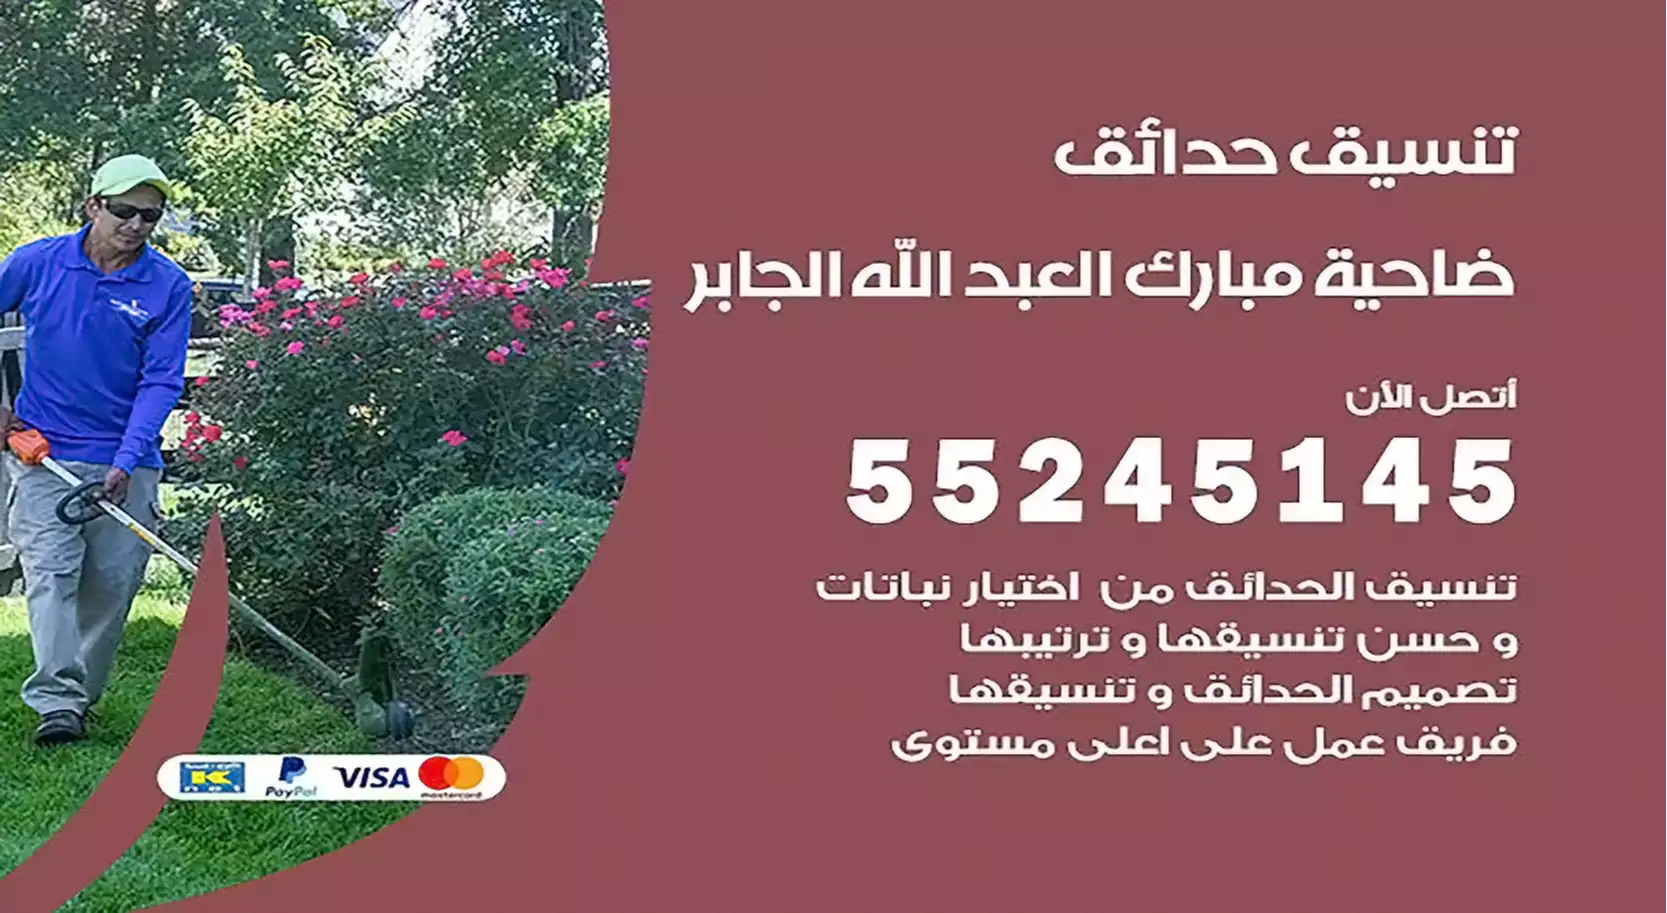 تنسيق حدائق مبارك العبد الله الجابر